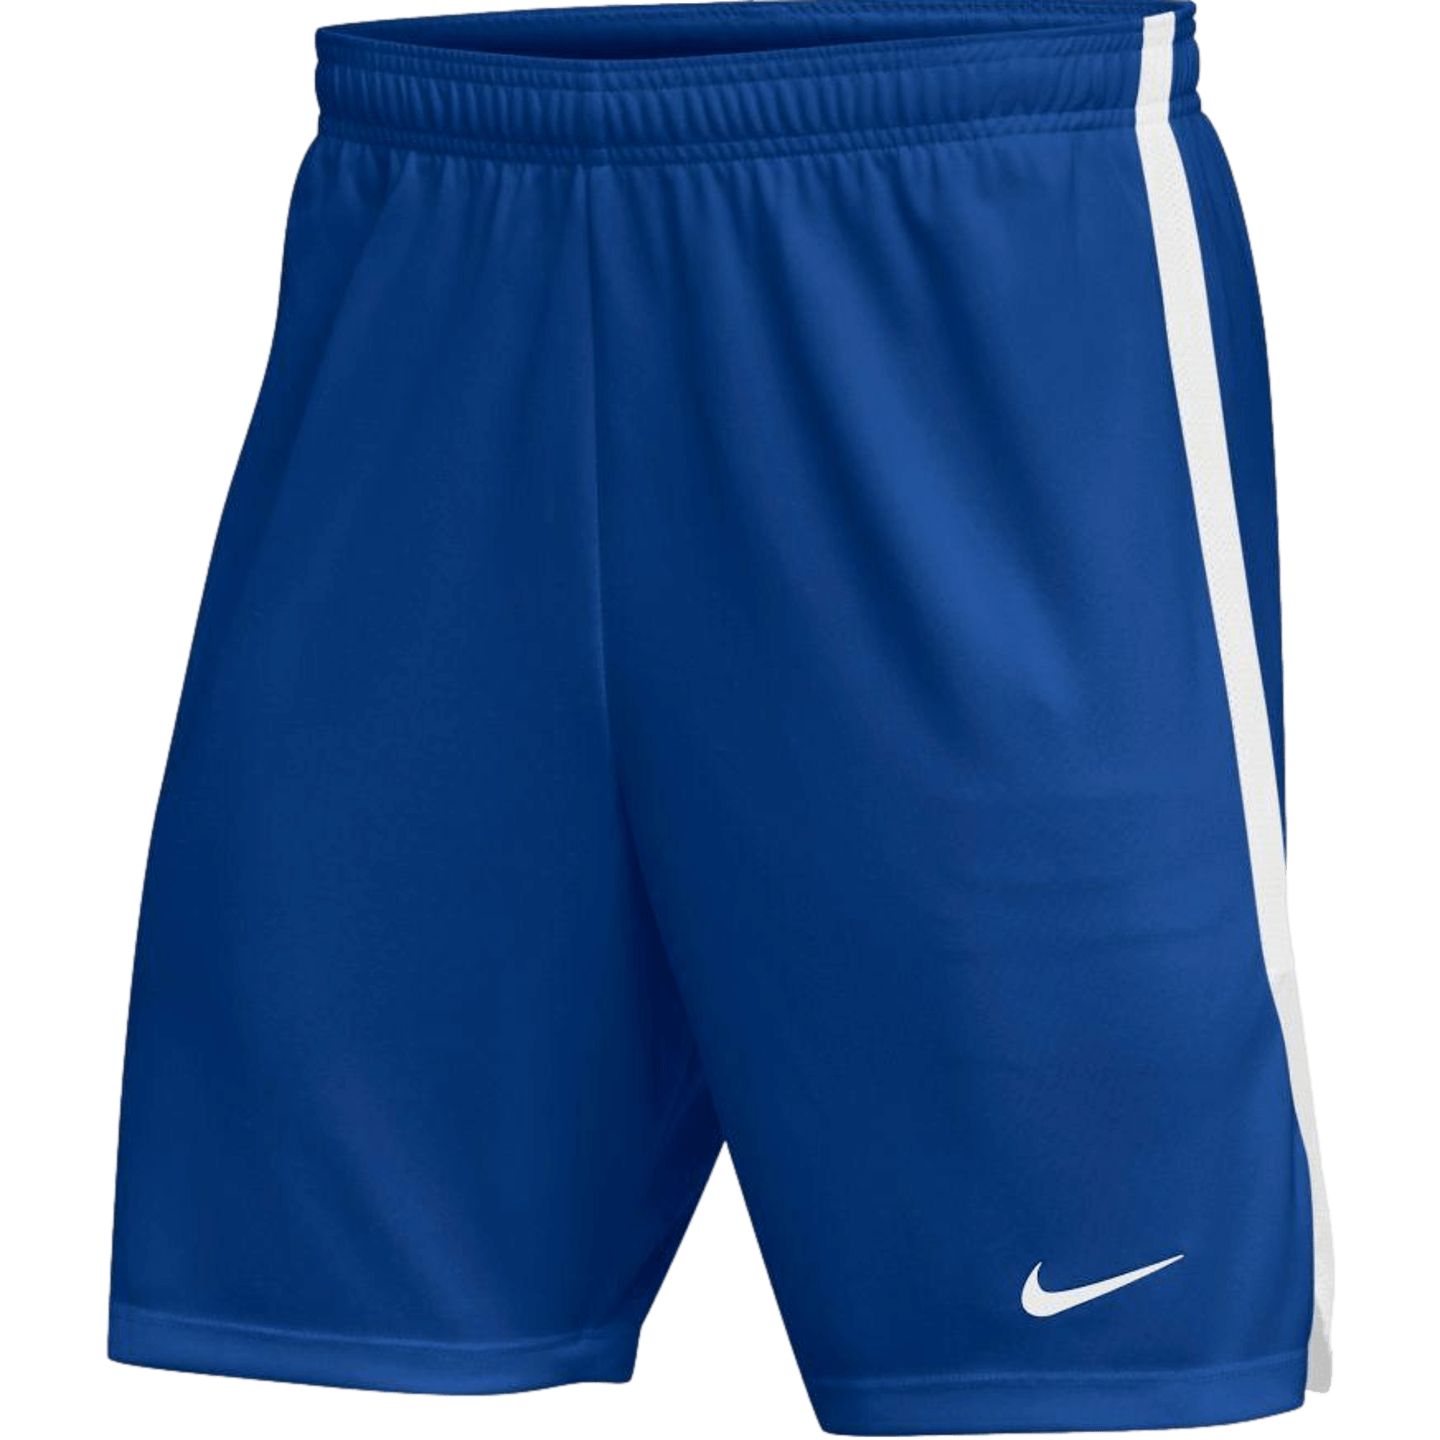 Nike Classic Hertha II Youth Shorts